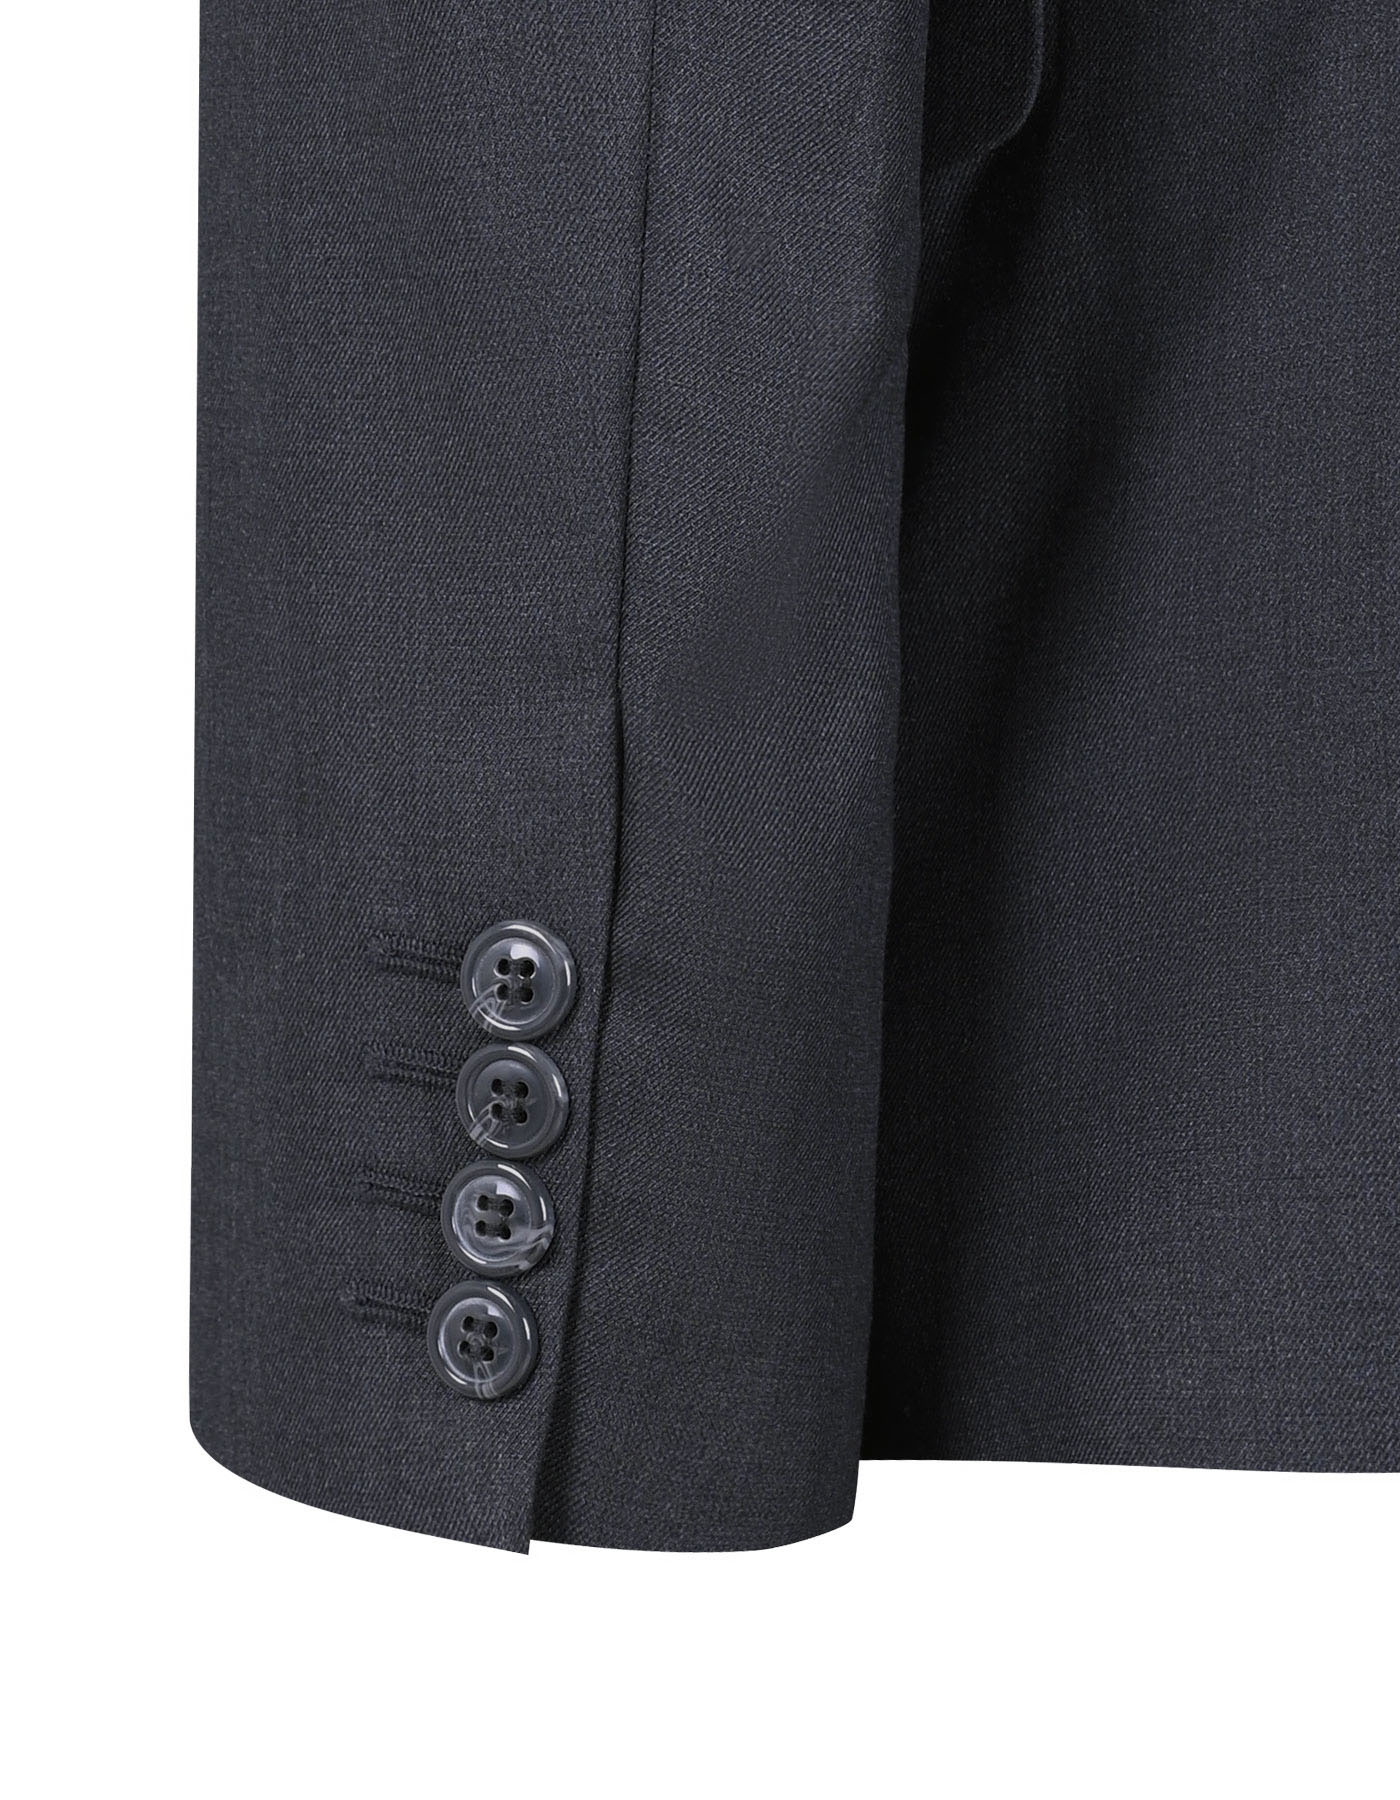 Suit Charcoal ST1053C Uniworth 3 Pcs Suit